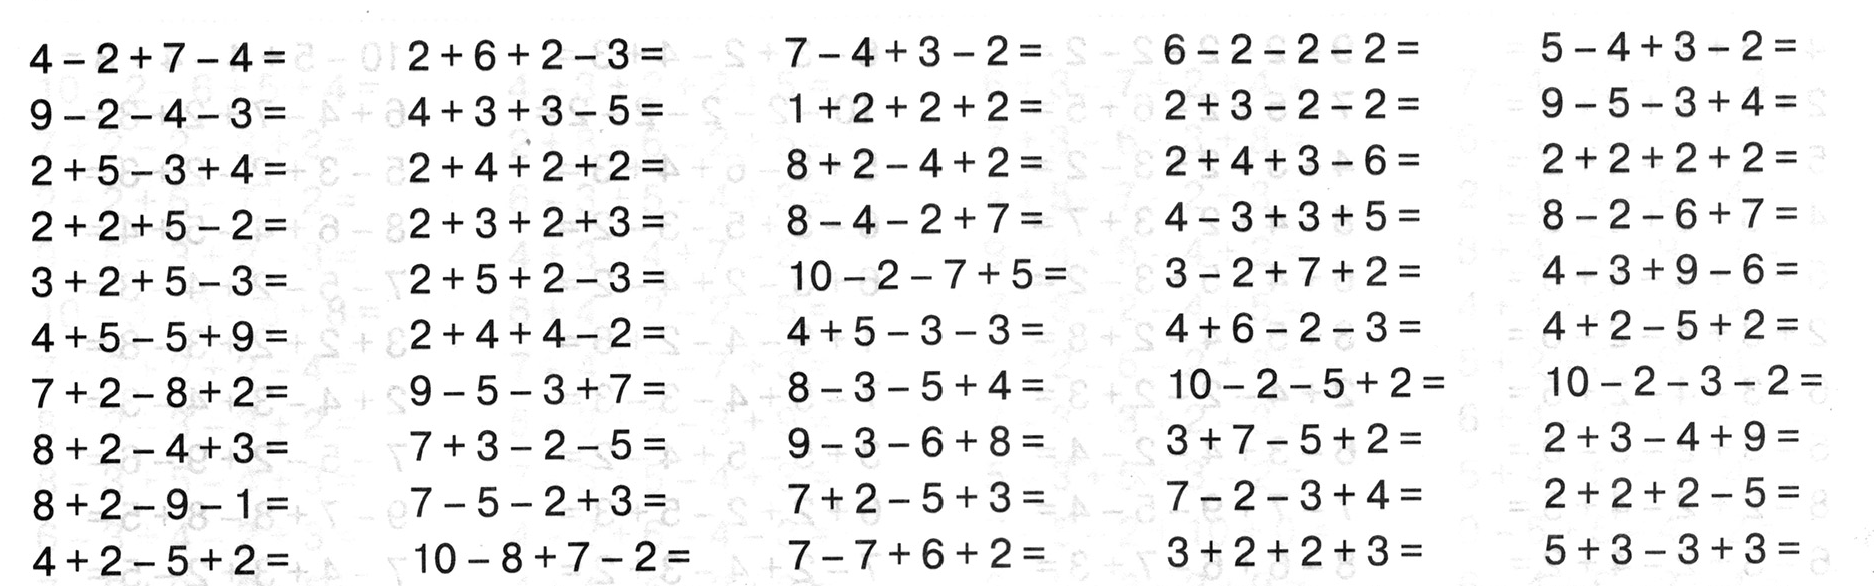 Примеры по математике плюс и минус. Примеры в пределах 10 на сложение и вычитание 1 класс. Примеры по математике 1 класс на сложение и вычитание в пределах 10. Счет в пределах 10 вычитание. Примеры для 1 класса по математике в пределах 10.